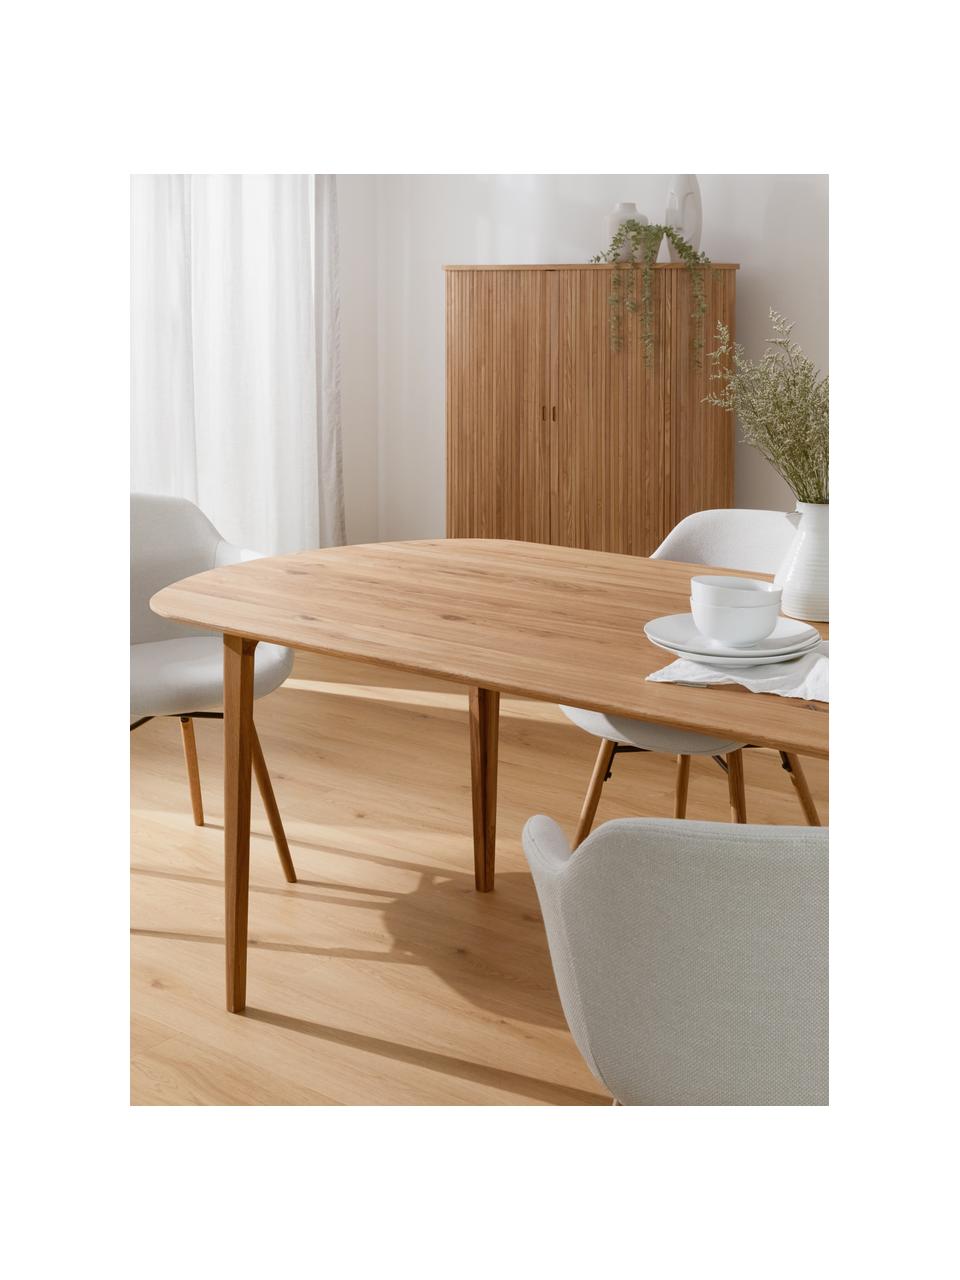 Oválny jedálenský stôl z dubového dreva Archie, 200 x 100, Masívne dubové drevo, ošetrené olejom (s FSC certifikátom), Dubové drevo, ošetrené olejom, Š 200 x H 110 cm